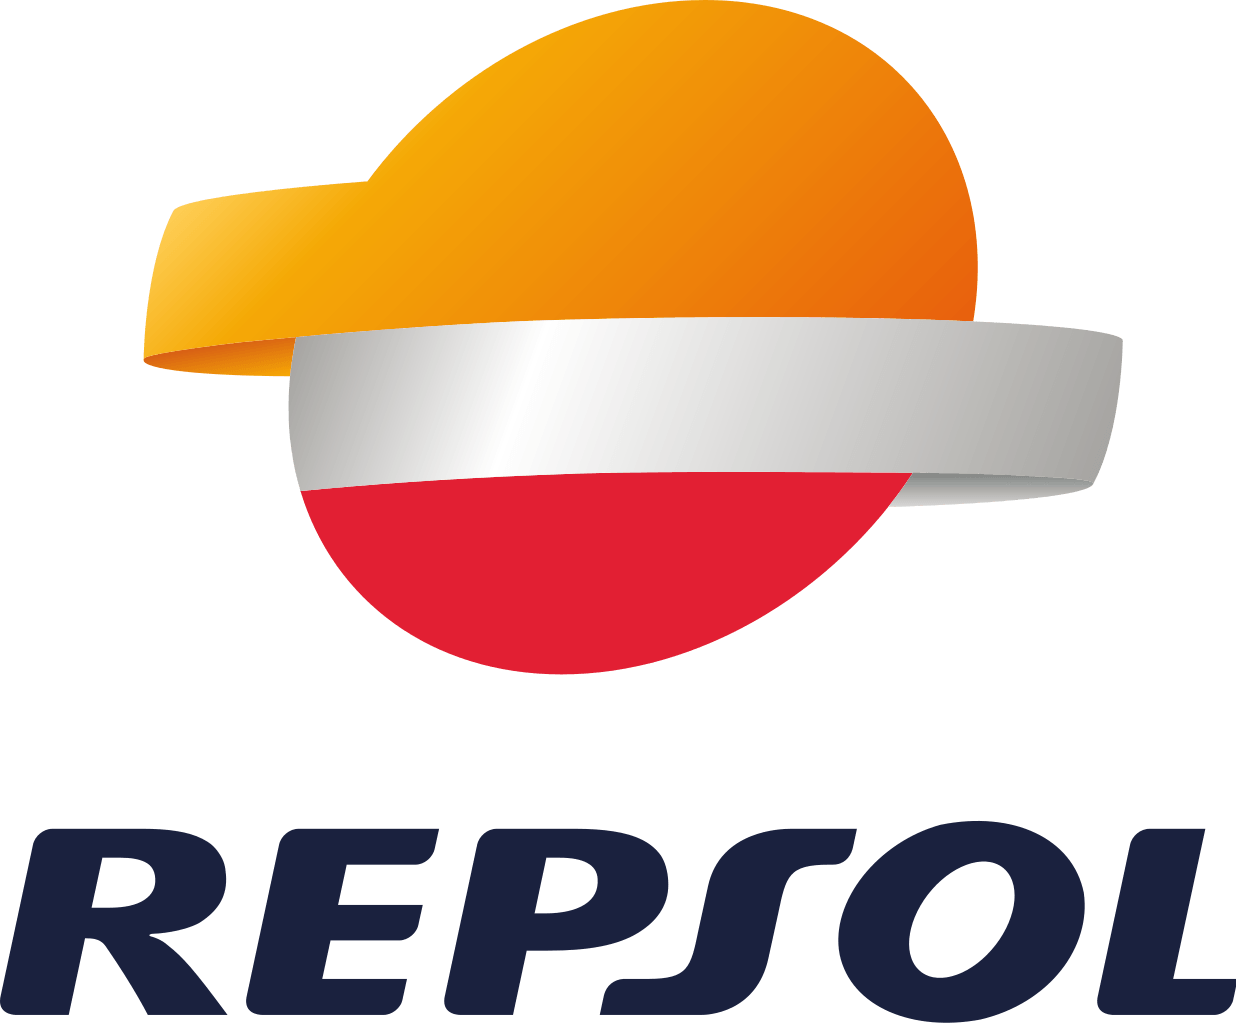 Repsol Logo - File:Repsol logo.svg